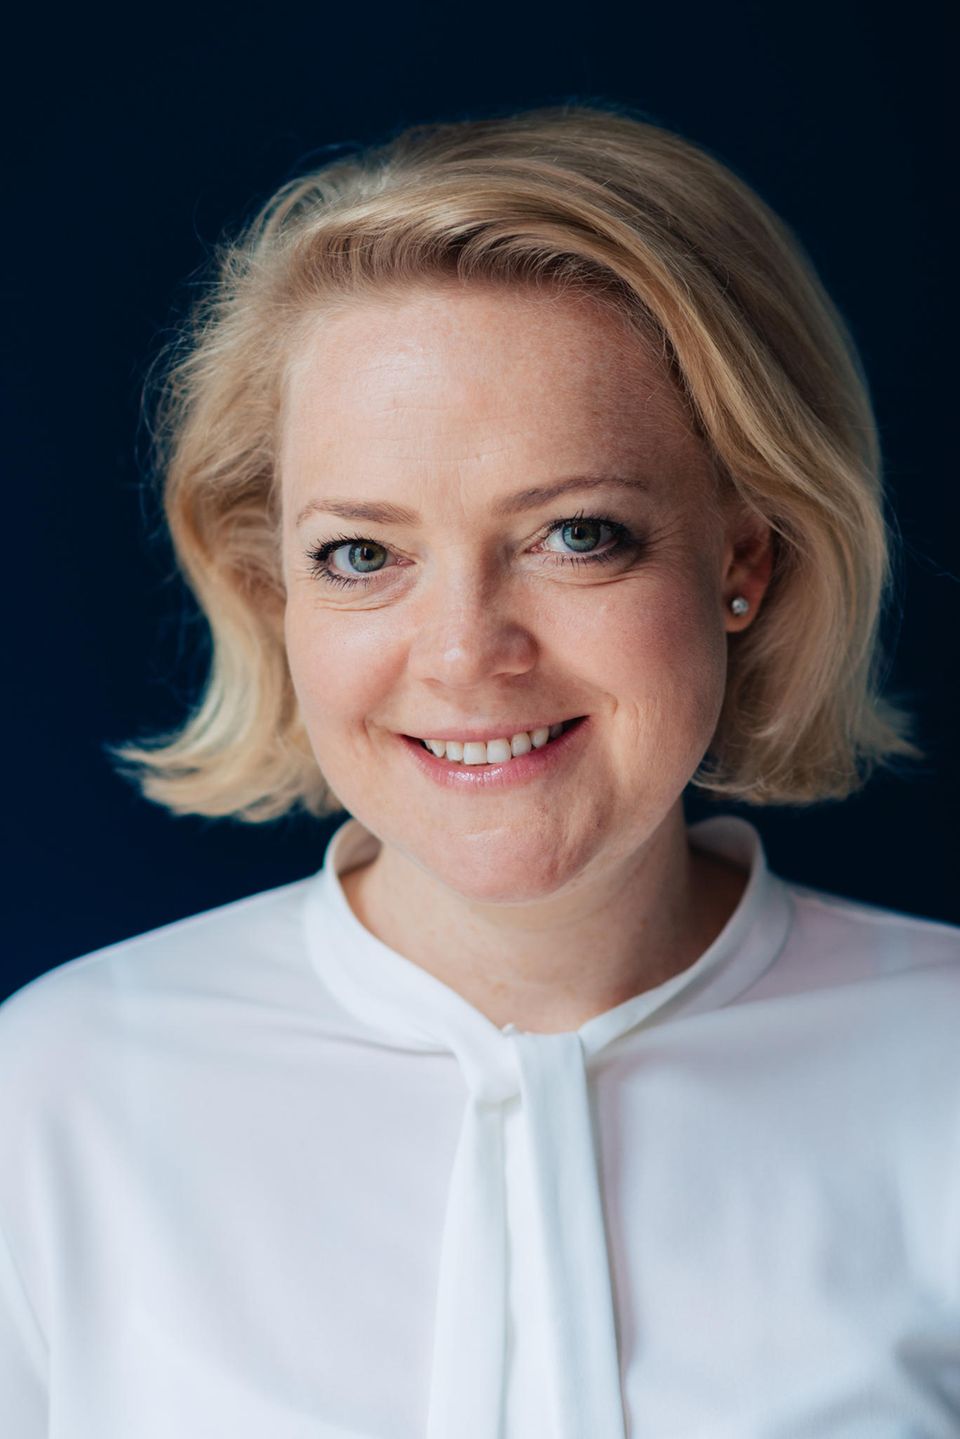 Ragnhild Struss ist Gründerin und Inhaberin von "Struss und Partner Karrierestrategien".